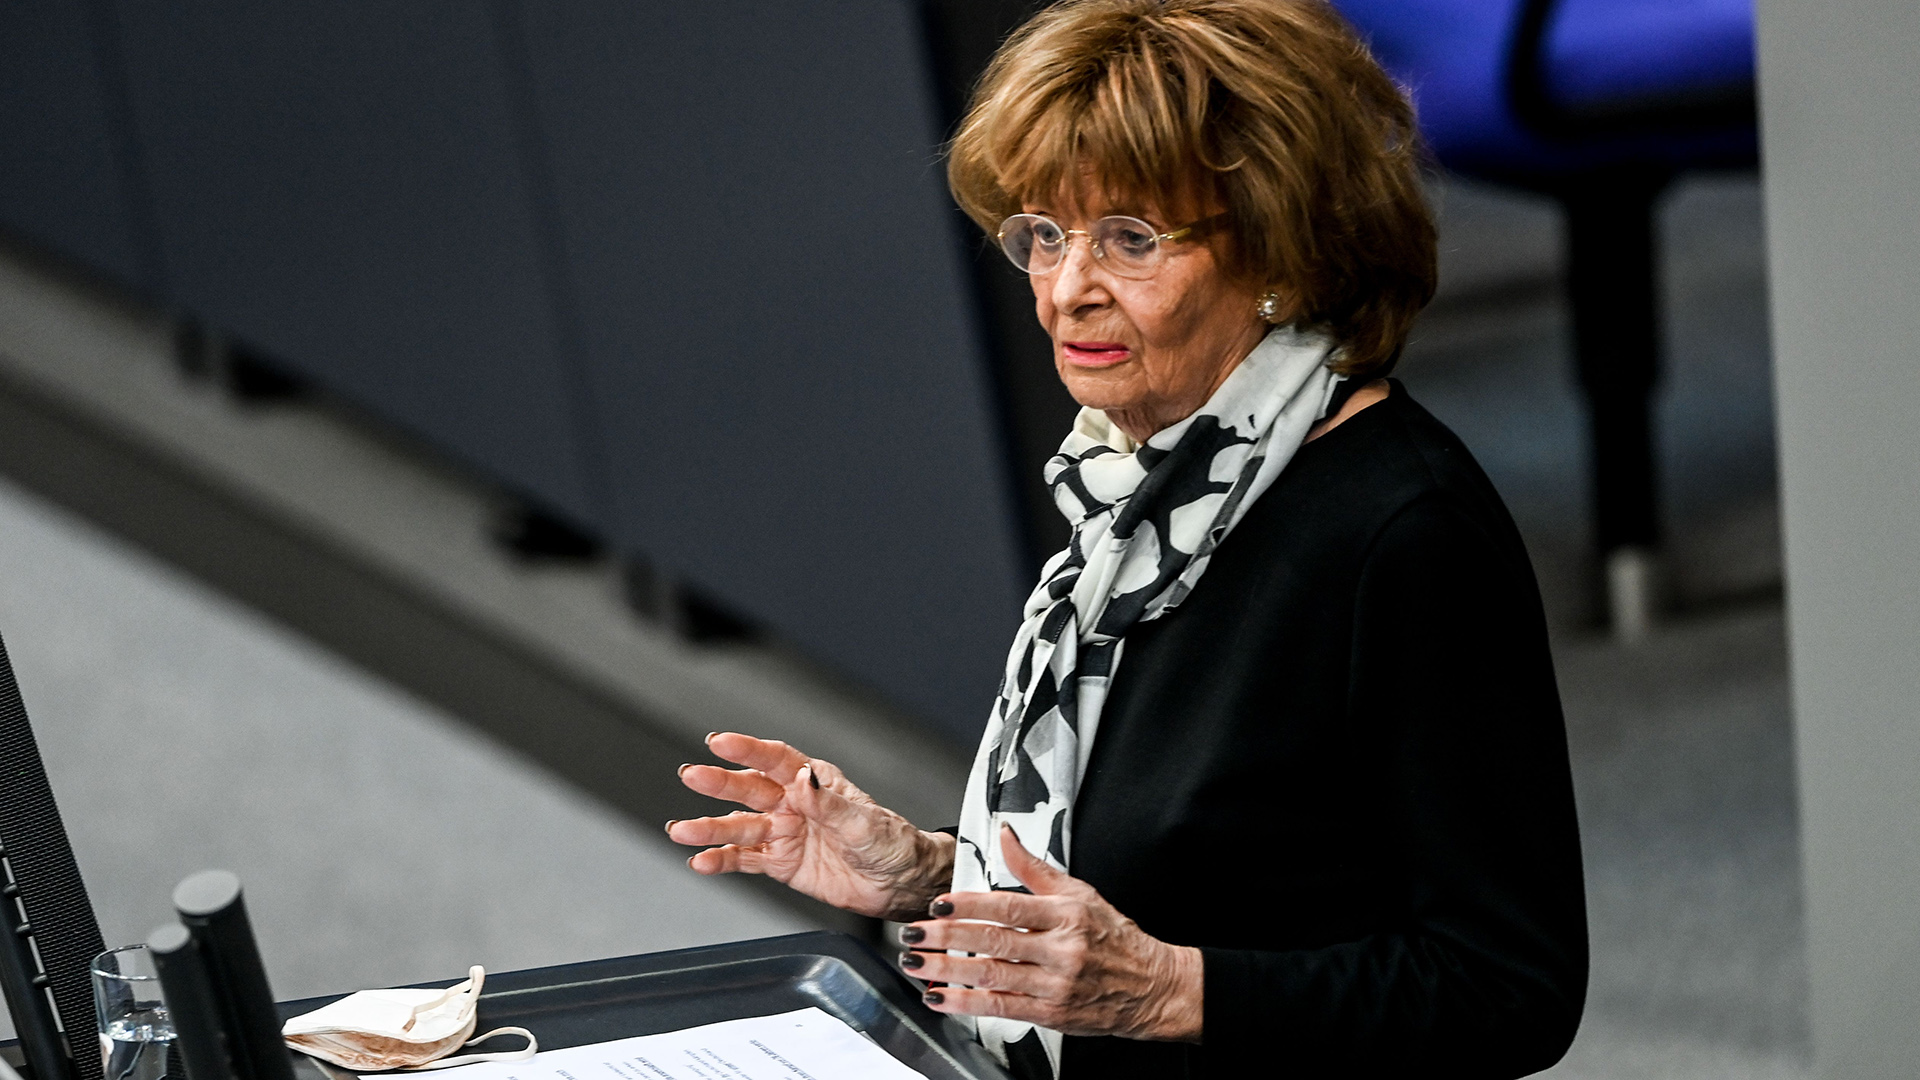 Charlotte Knobloch während ihrer Rede im Bundestag | FILIP SINGER/EPA-EFE/Shutterstoc